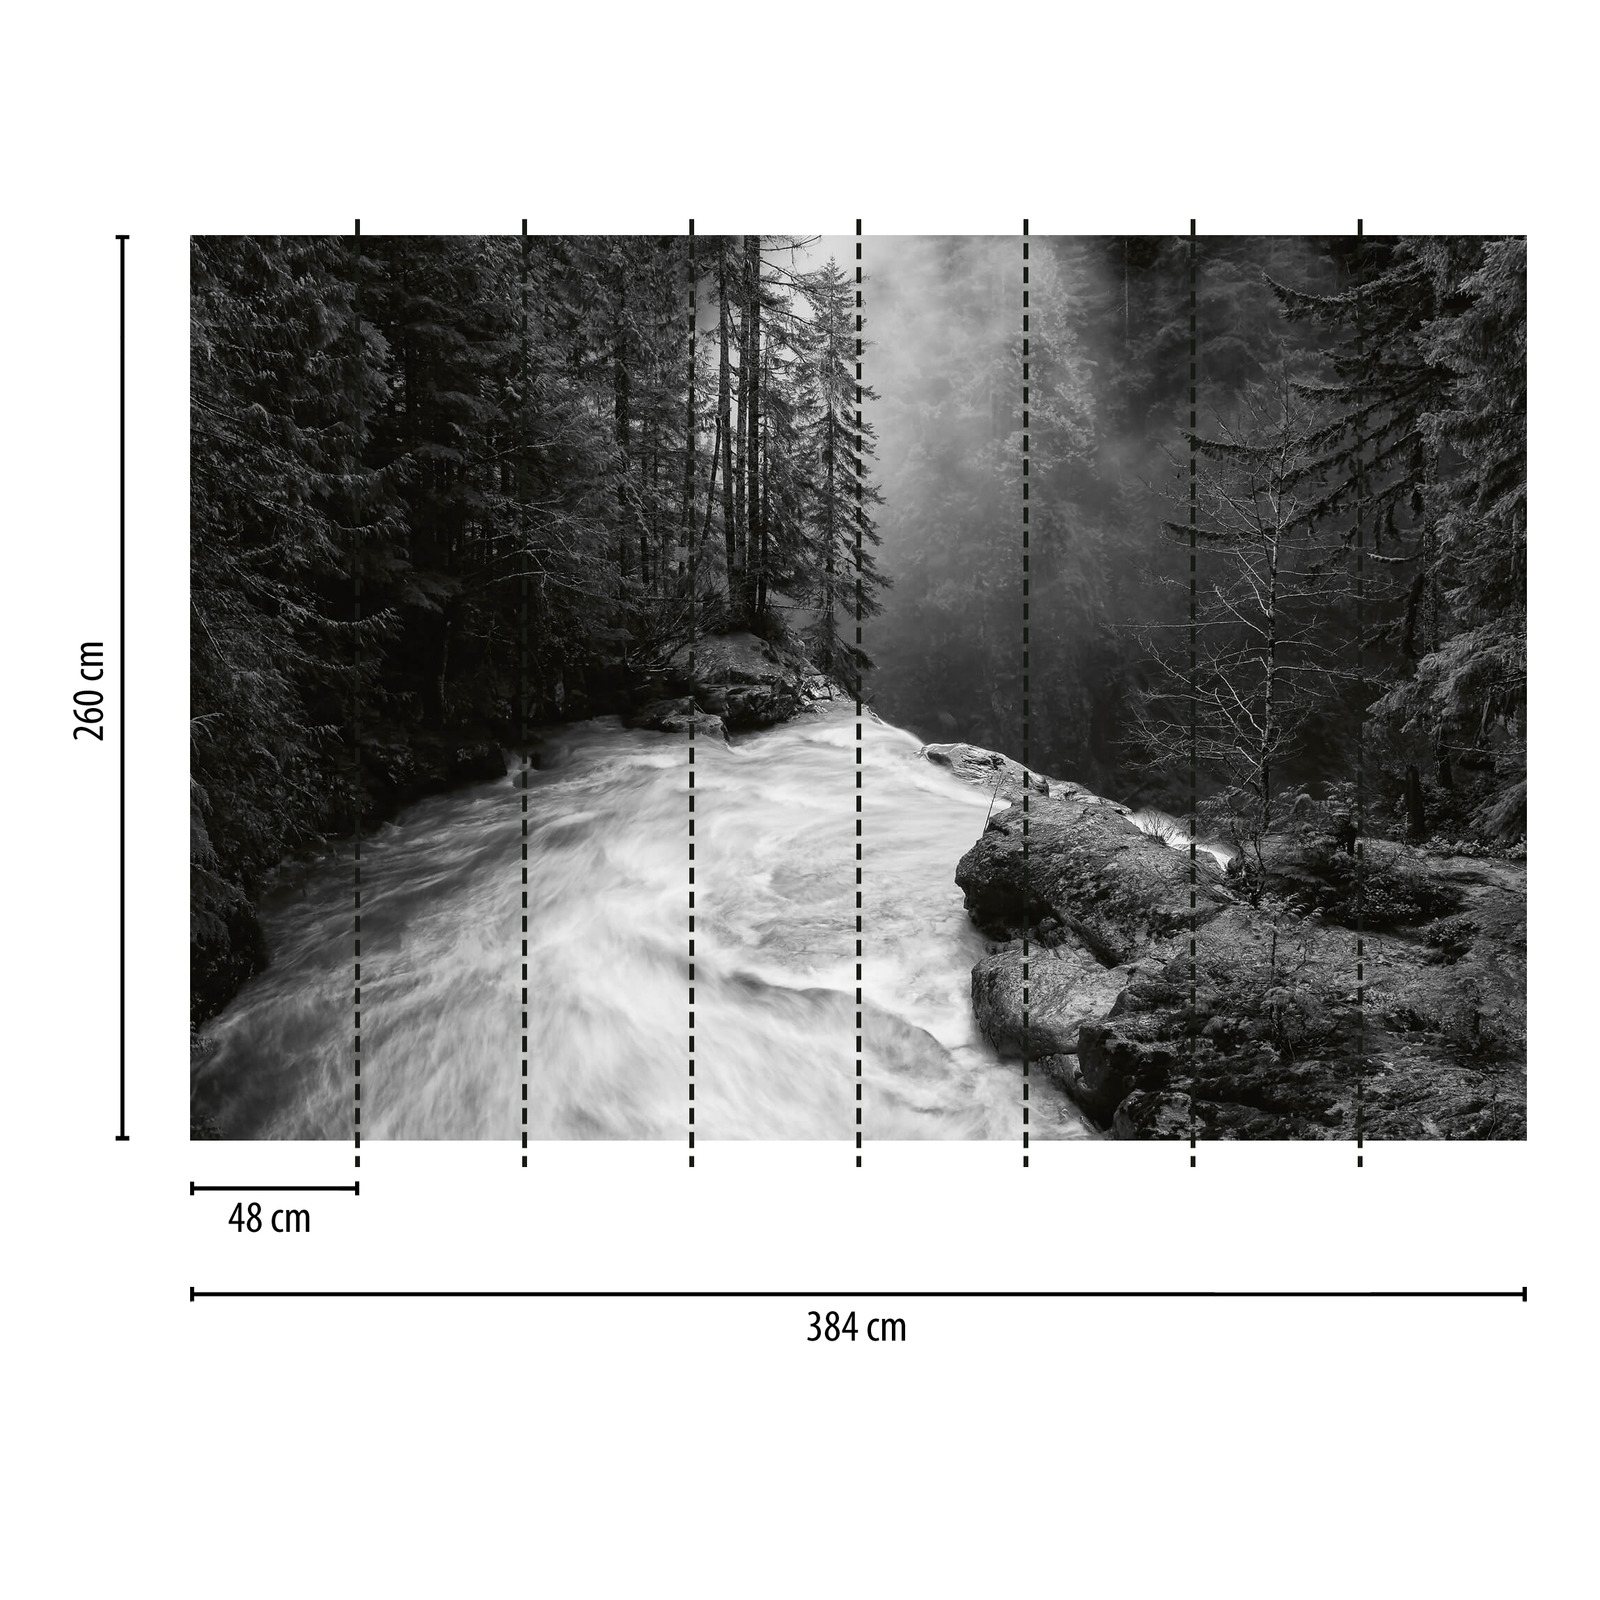             Fotomurali Foresta con cascata - Nero, bianco, grigio
        